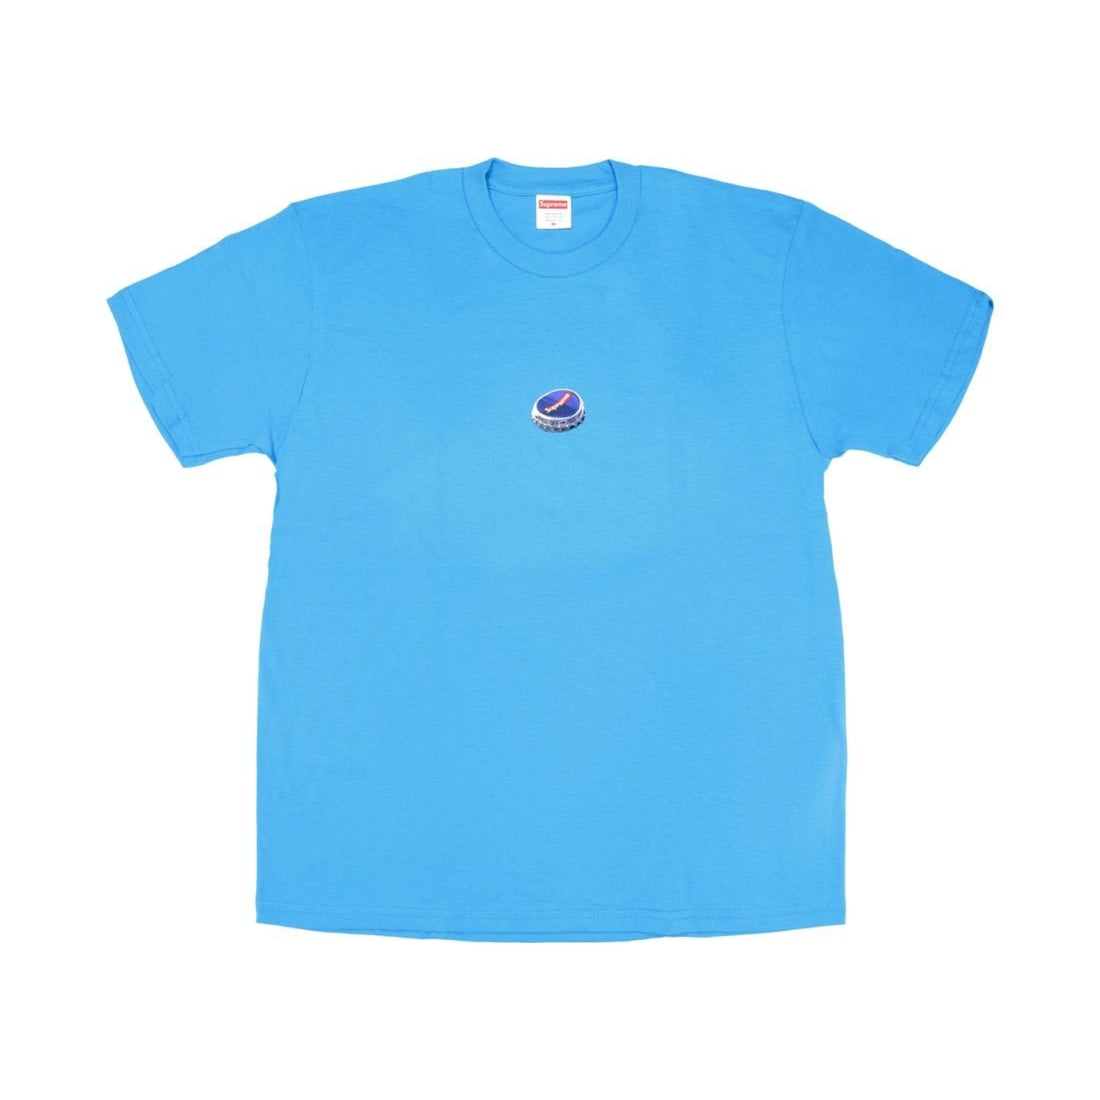 Supreme bottle cap t-shirt “blue” - Centrall Online